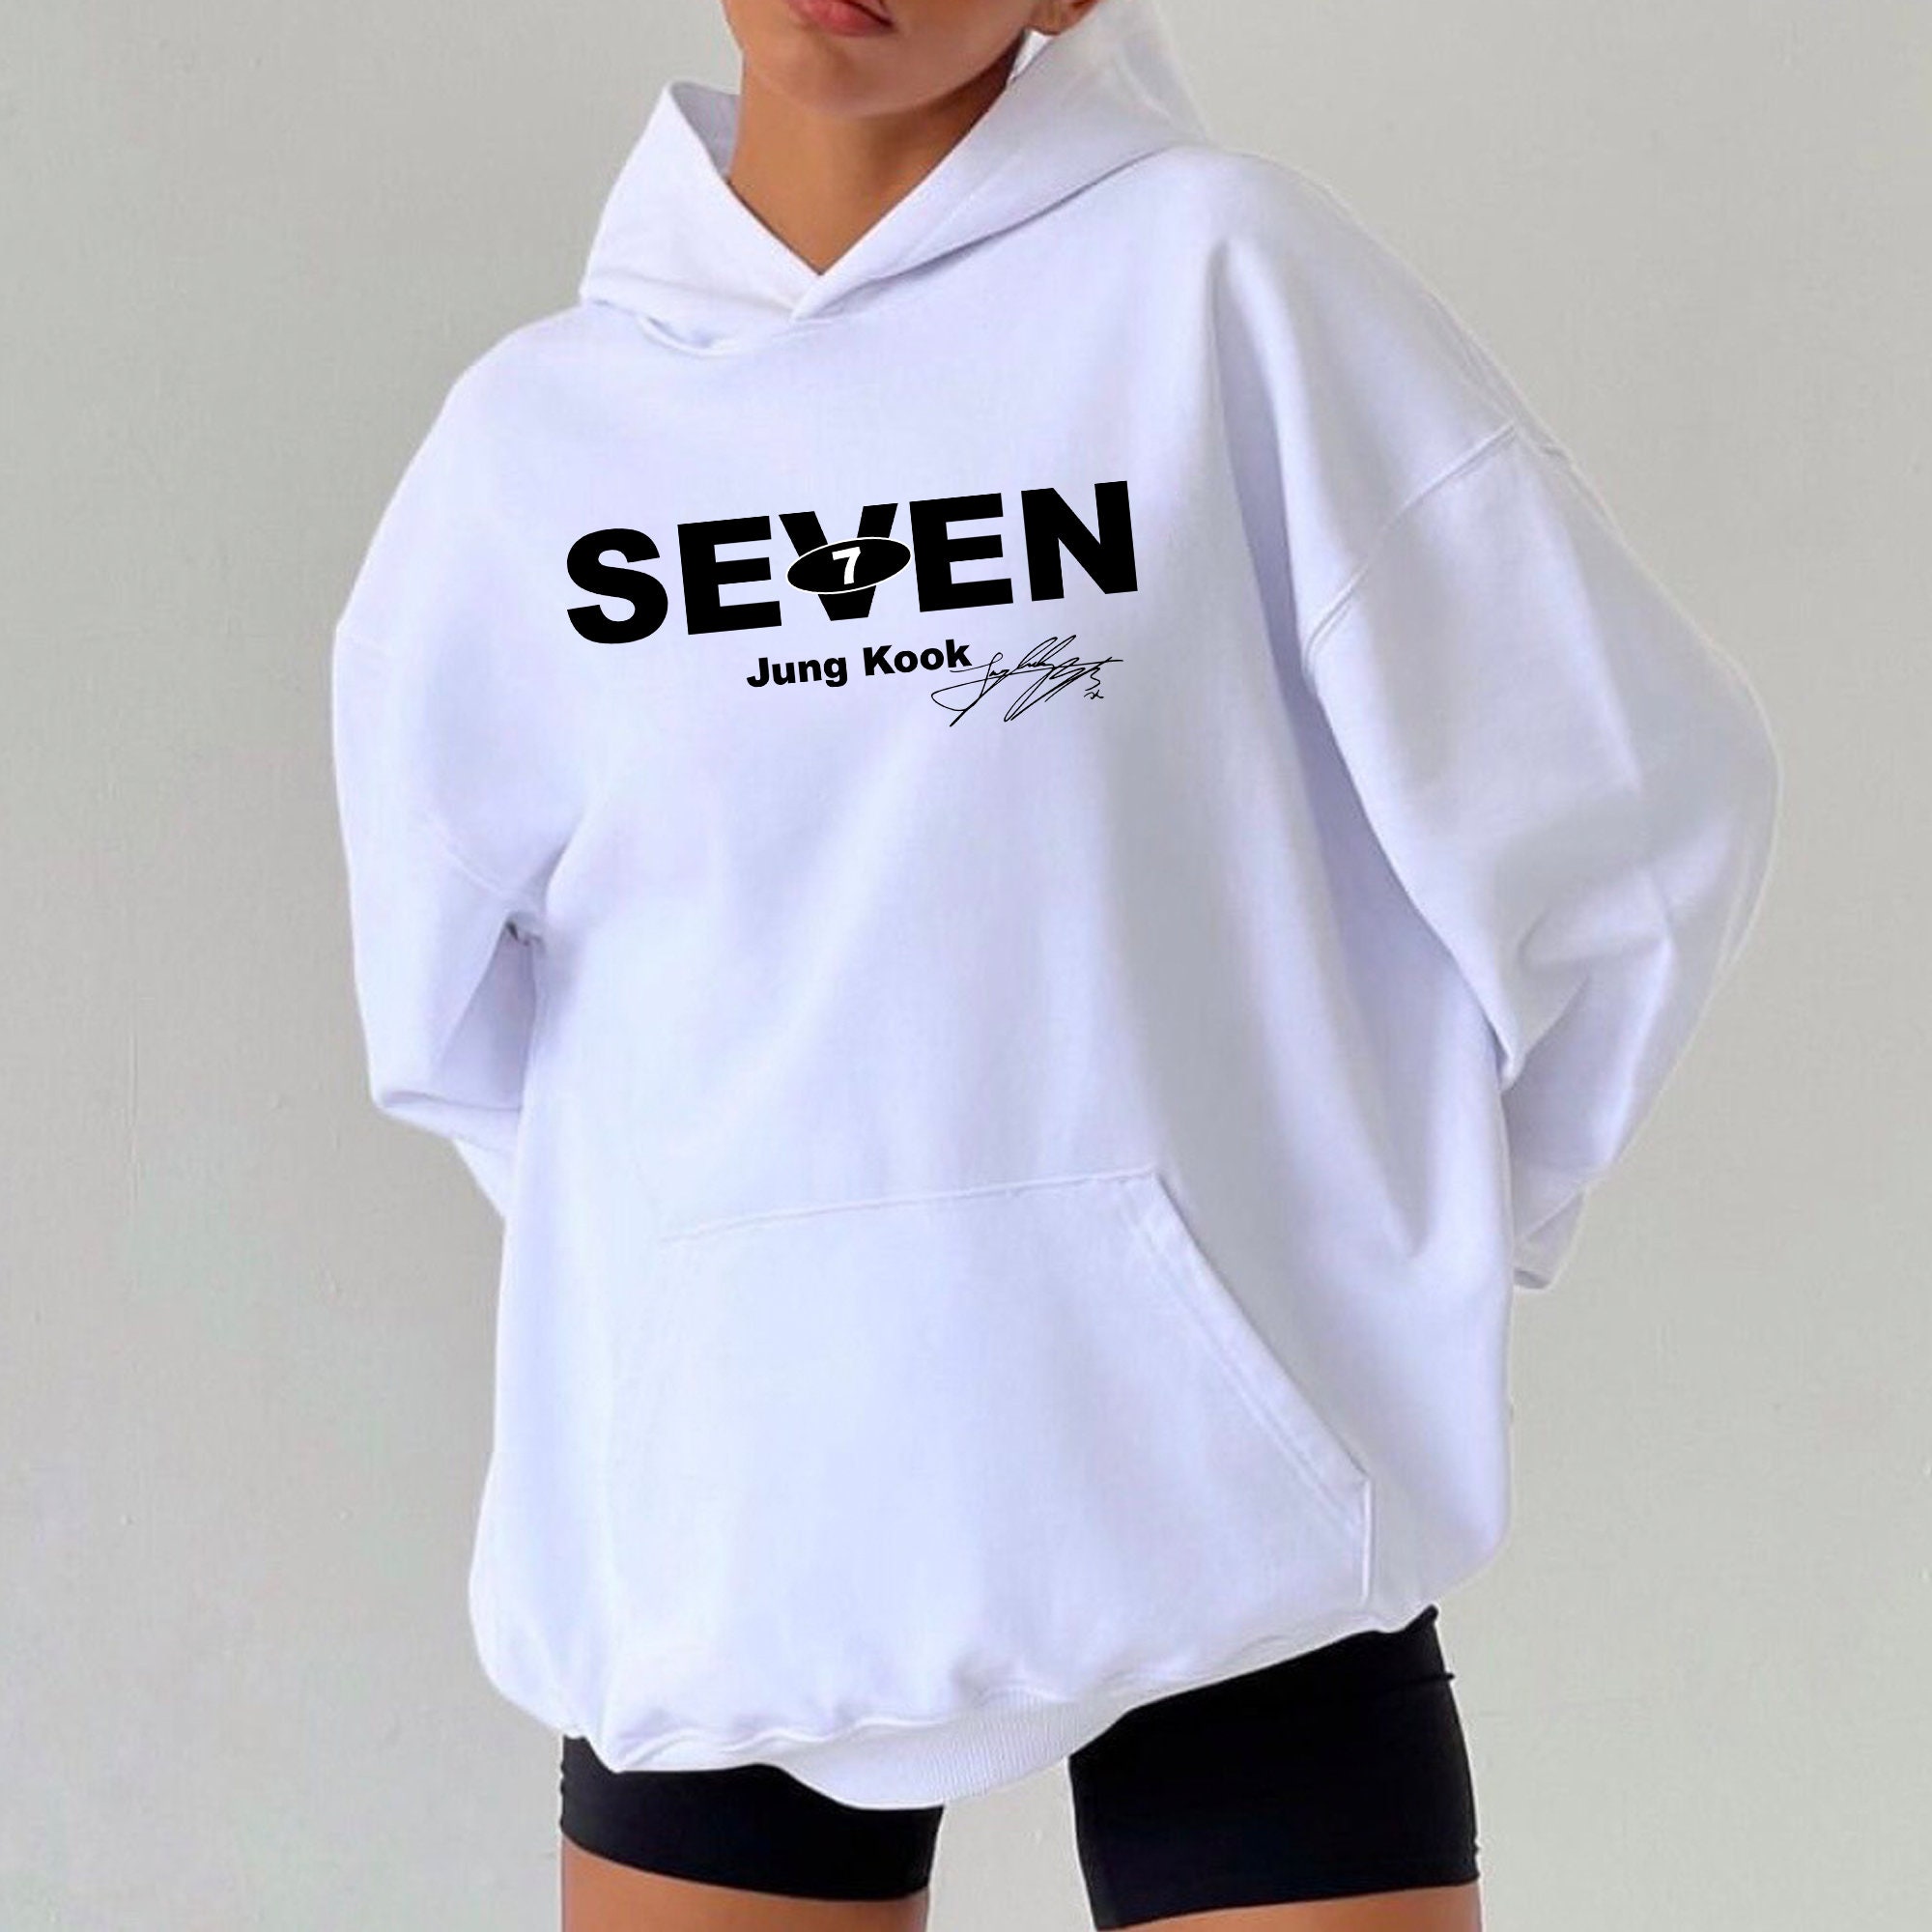 7 Jungkook cute hoodie ideas  cute hoodie, jungkook, hoodies